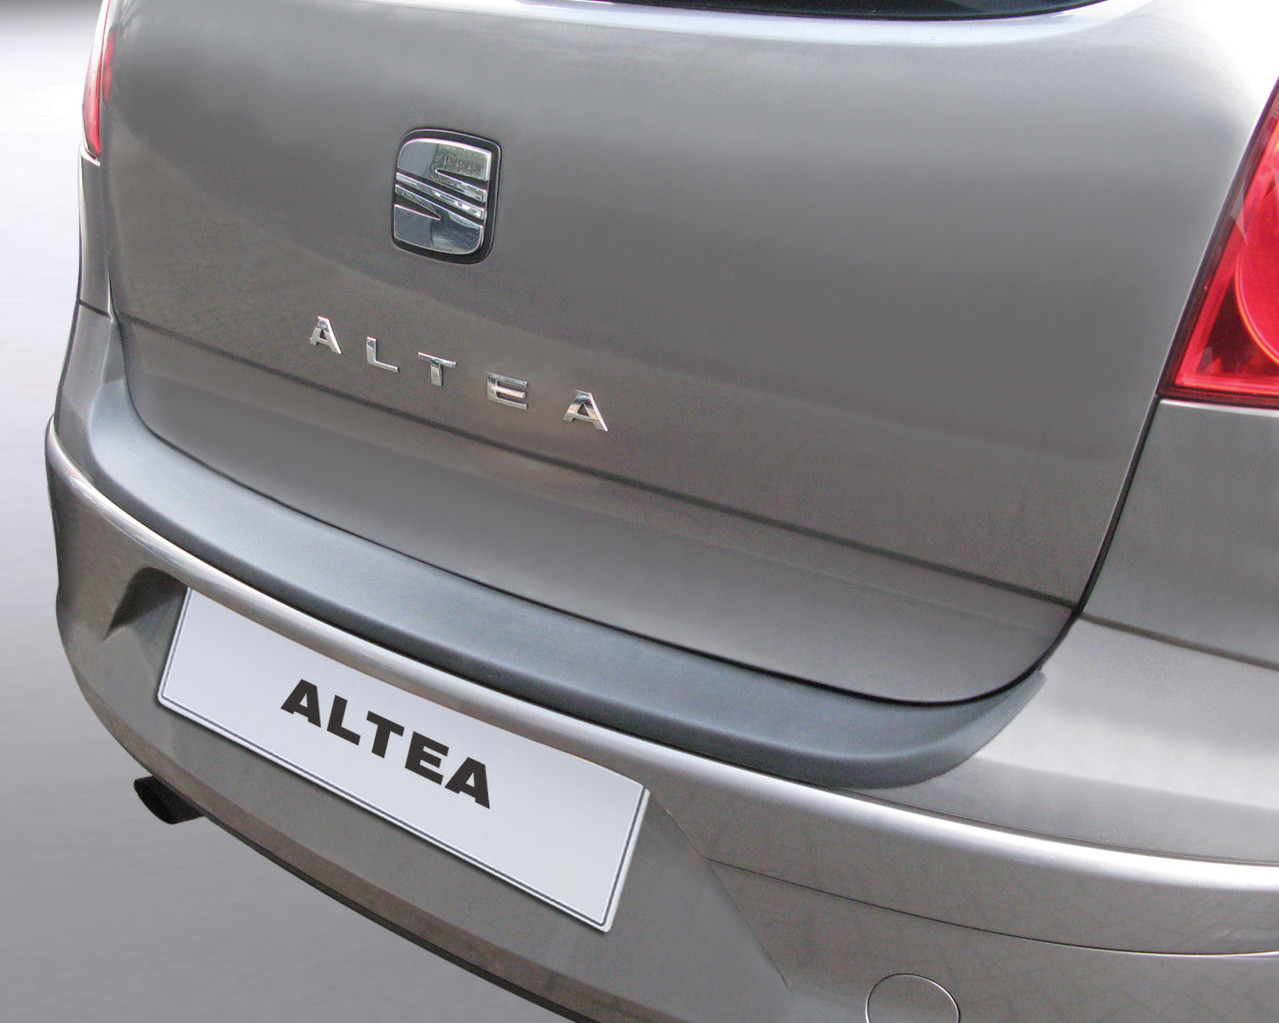 Ladekantenschutz für SEAT ALTEA - Schutz für die Ladekante Ihres Fahrzeuges